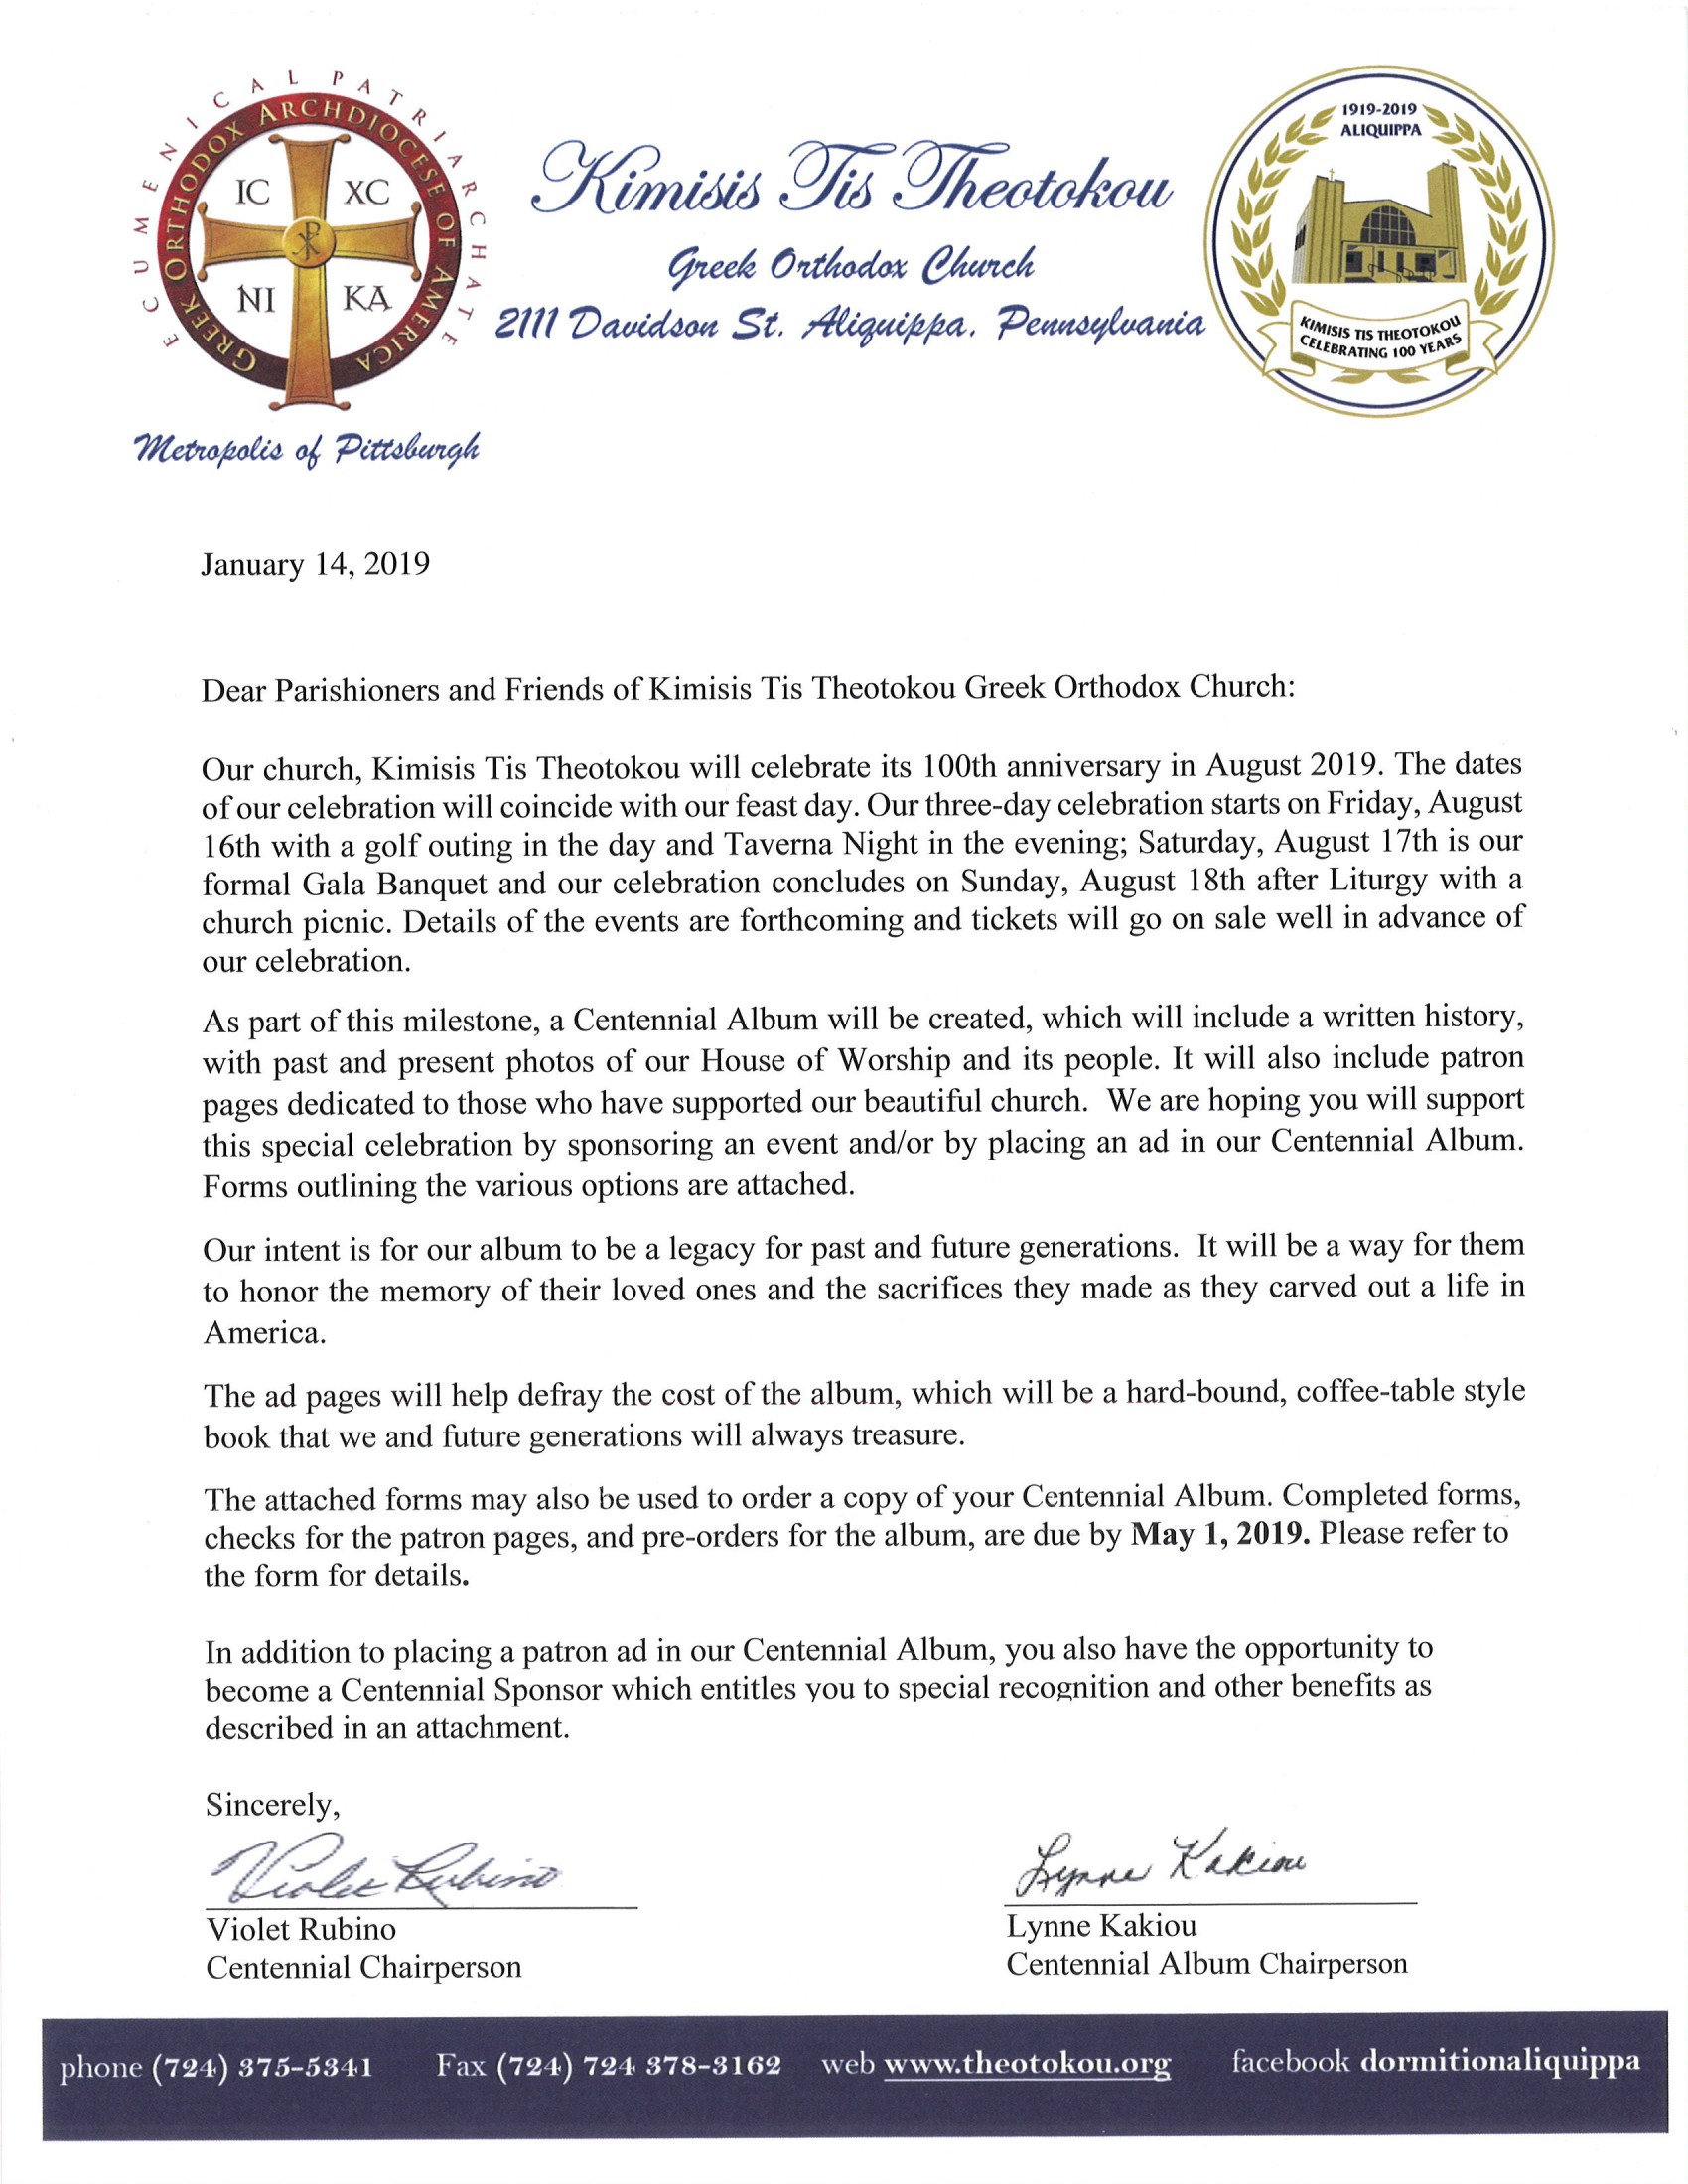 Letter to Parishioners | Kimisis Tis Theotokou Greek Orthodox Church